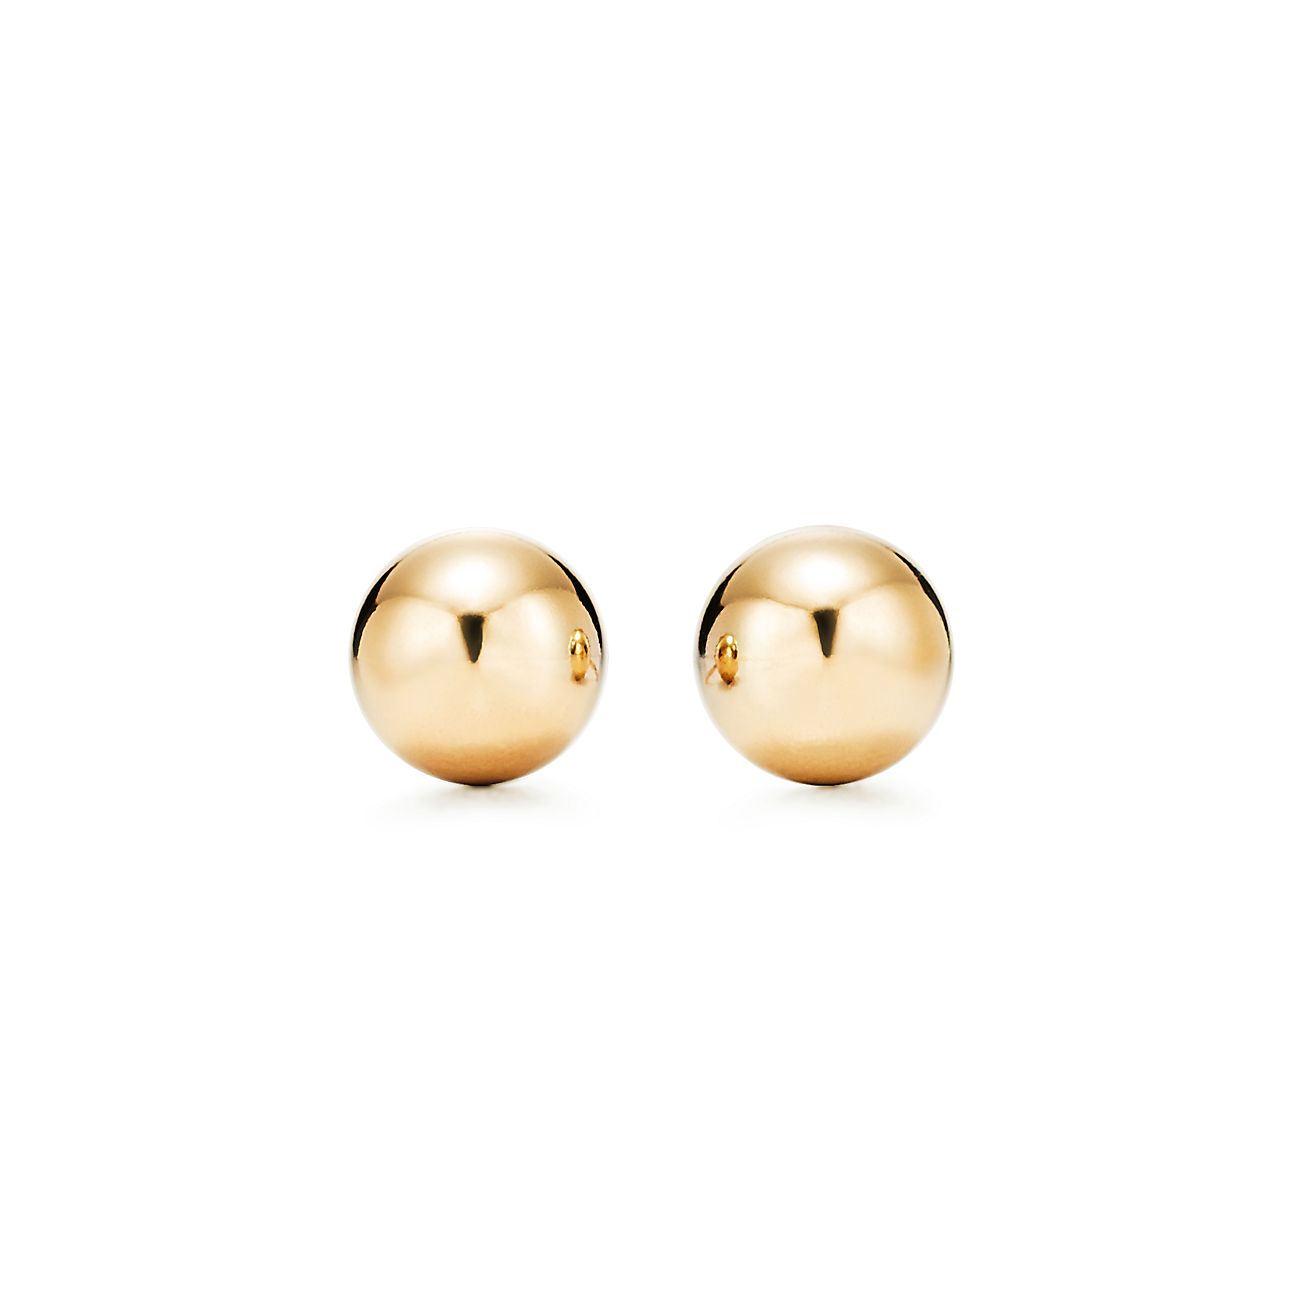 Tiffany HardWear Ball Earrings in Yellow Gold, 8 mm | Tiffany & Co.